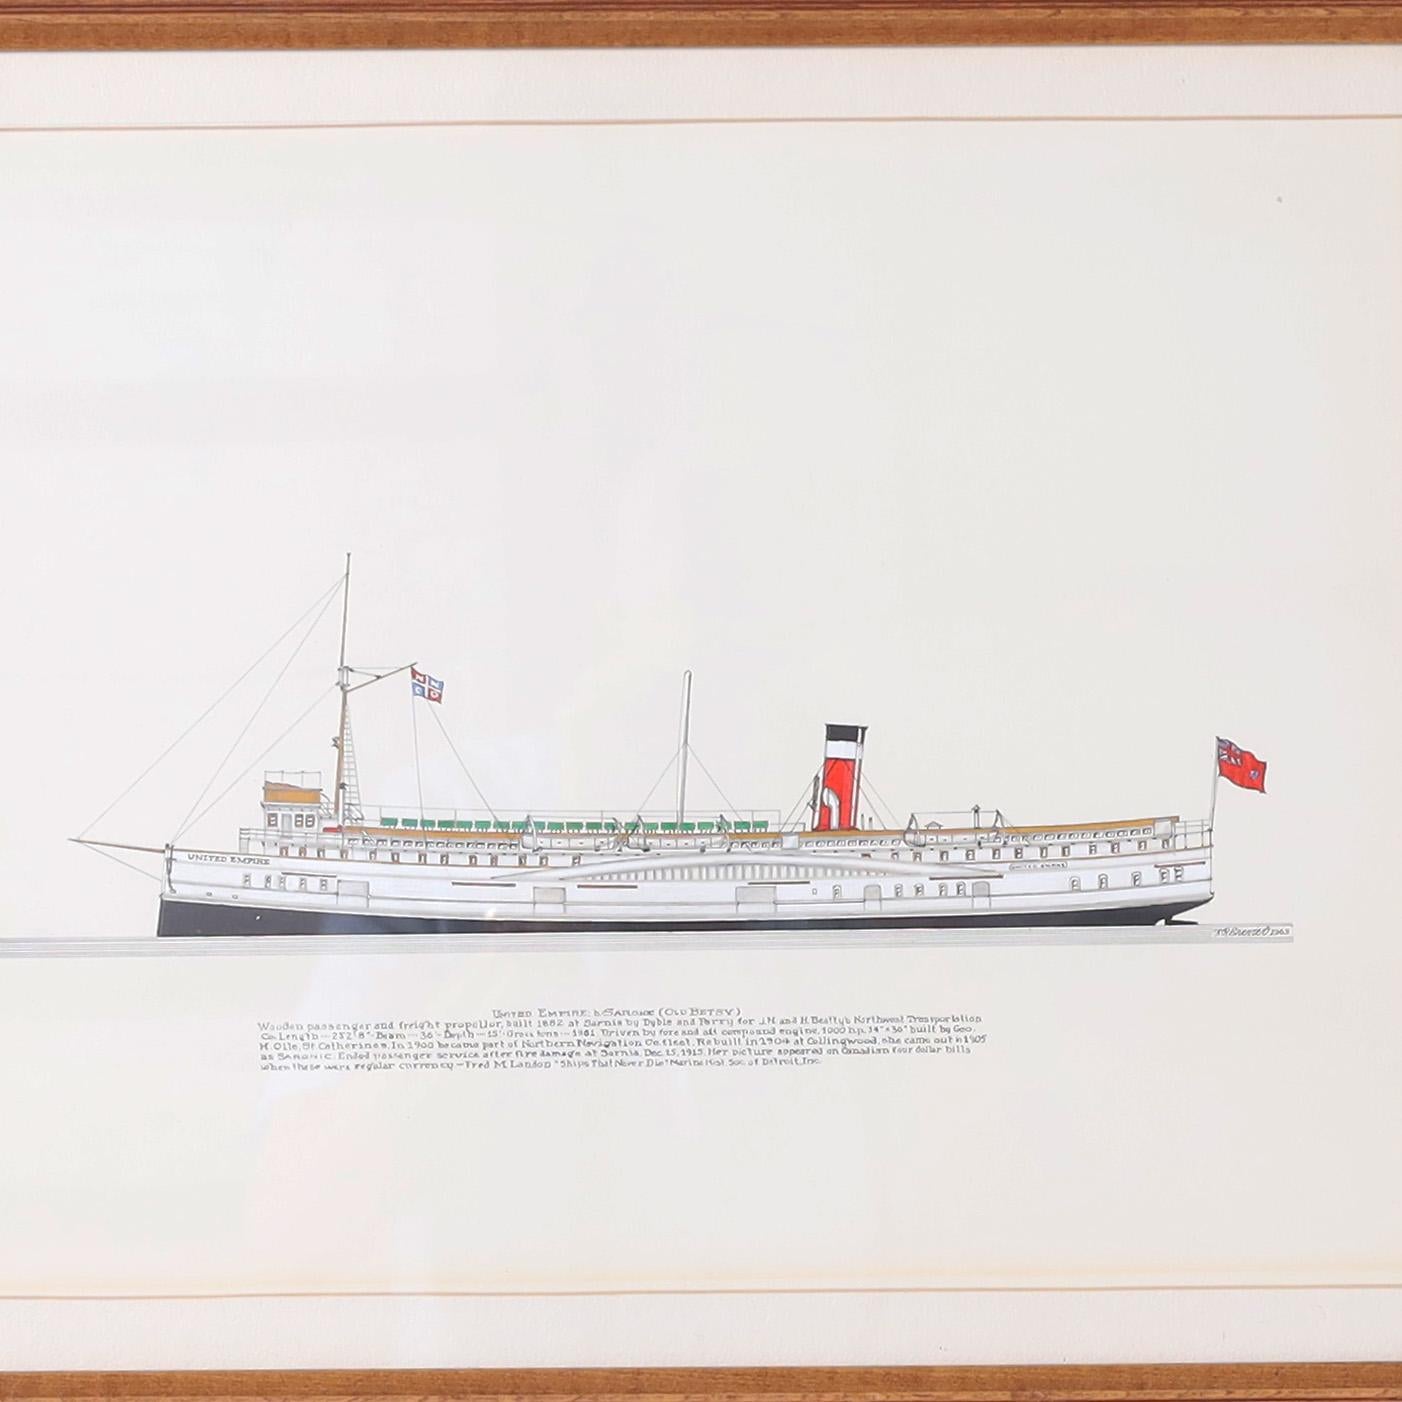 Tusche- und Gouache-Gemälde auf Papier eines Dampfschiffs der Großen Seen aus dem 19. Jahrhundert, das von dem bekannten amerikanischen Künstler Frank Crevier signiert, gerahmt und unter Glas präsentiert wird, in präzisem zeichnerischen Stil. Wie